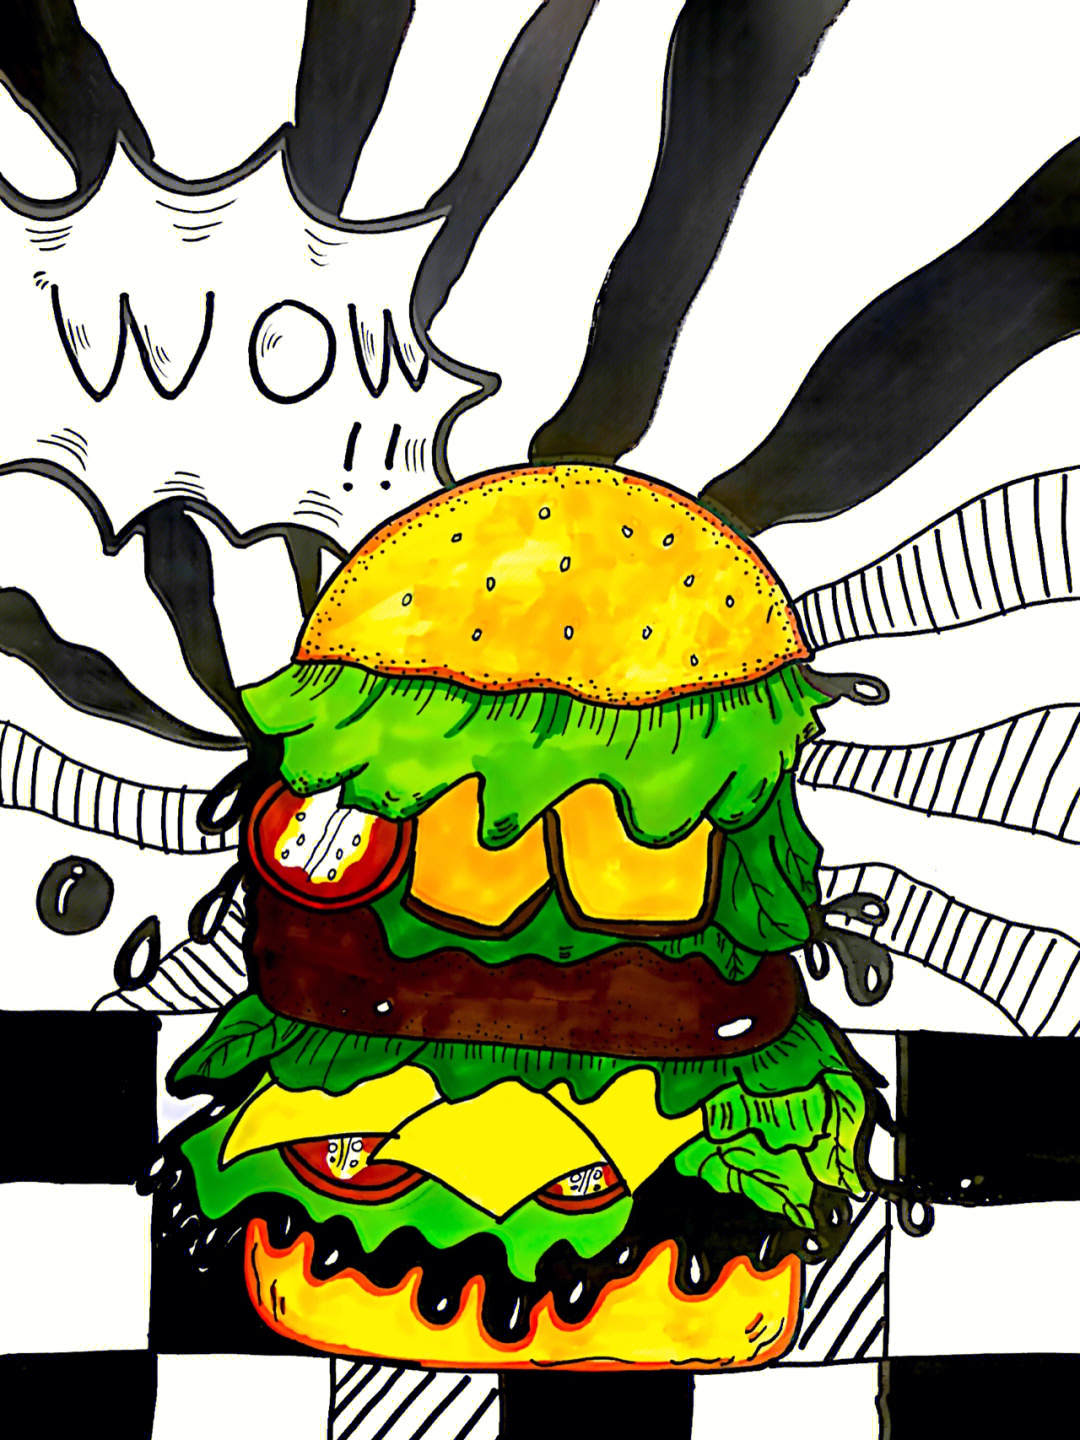 背景线描适合年龄:8～11岁想要把汉堡画高点 但是过分高了菜和肉都画